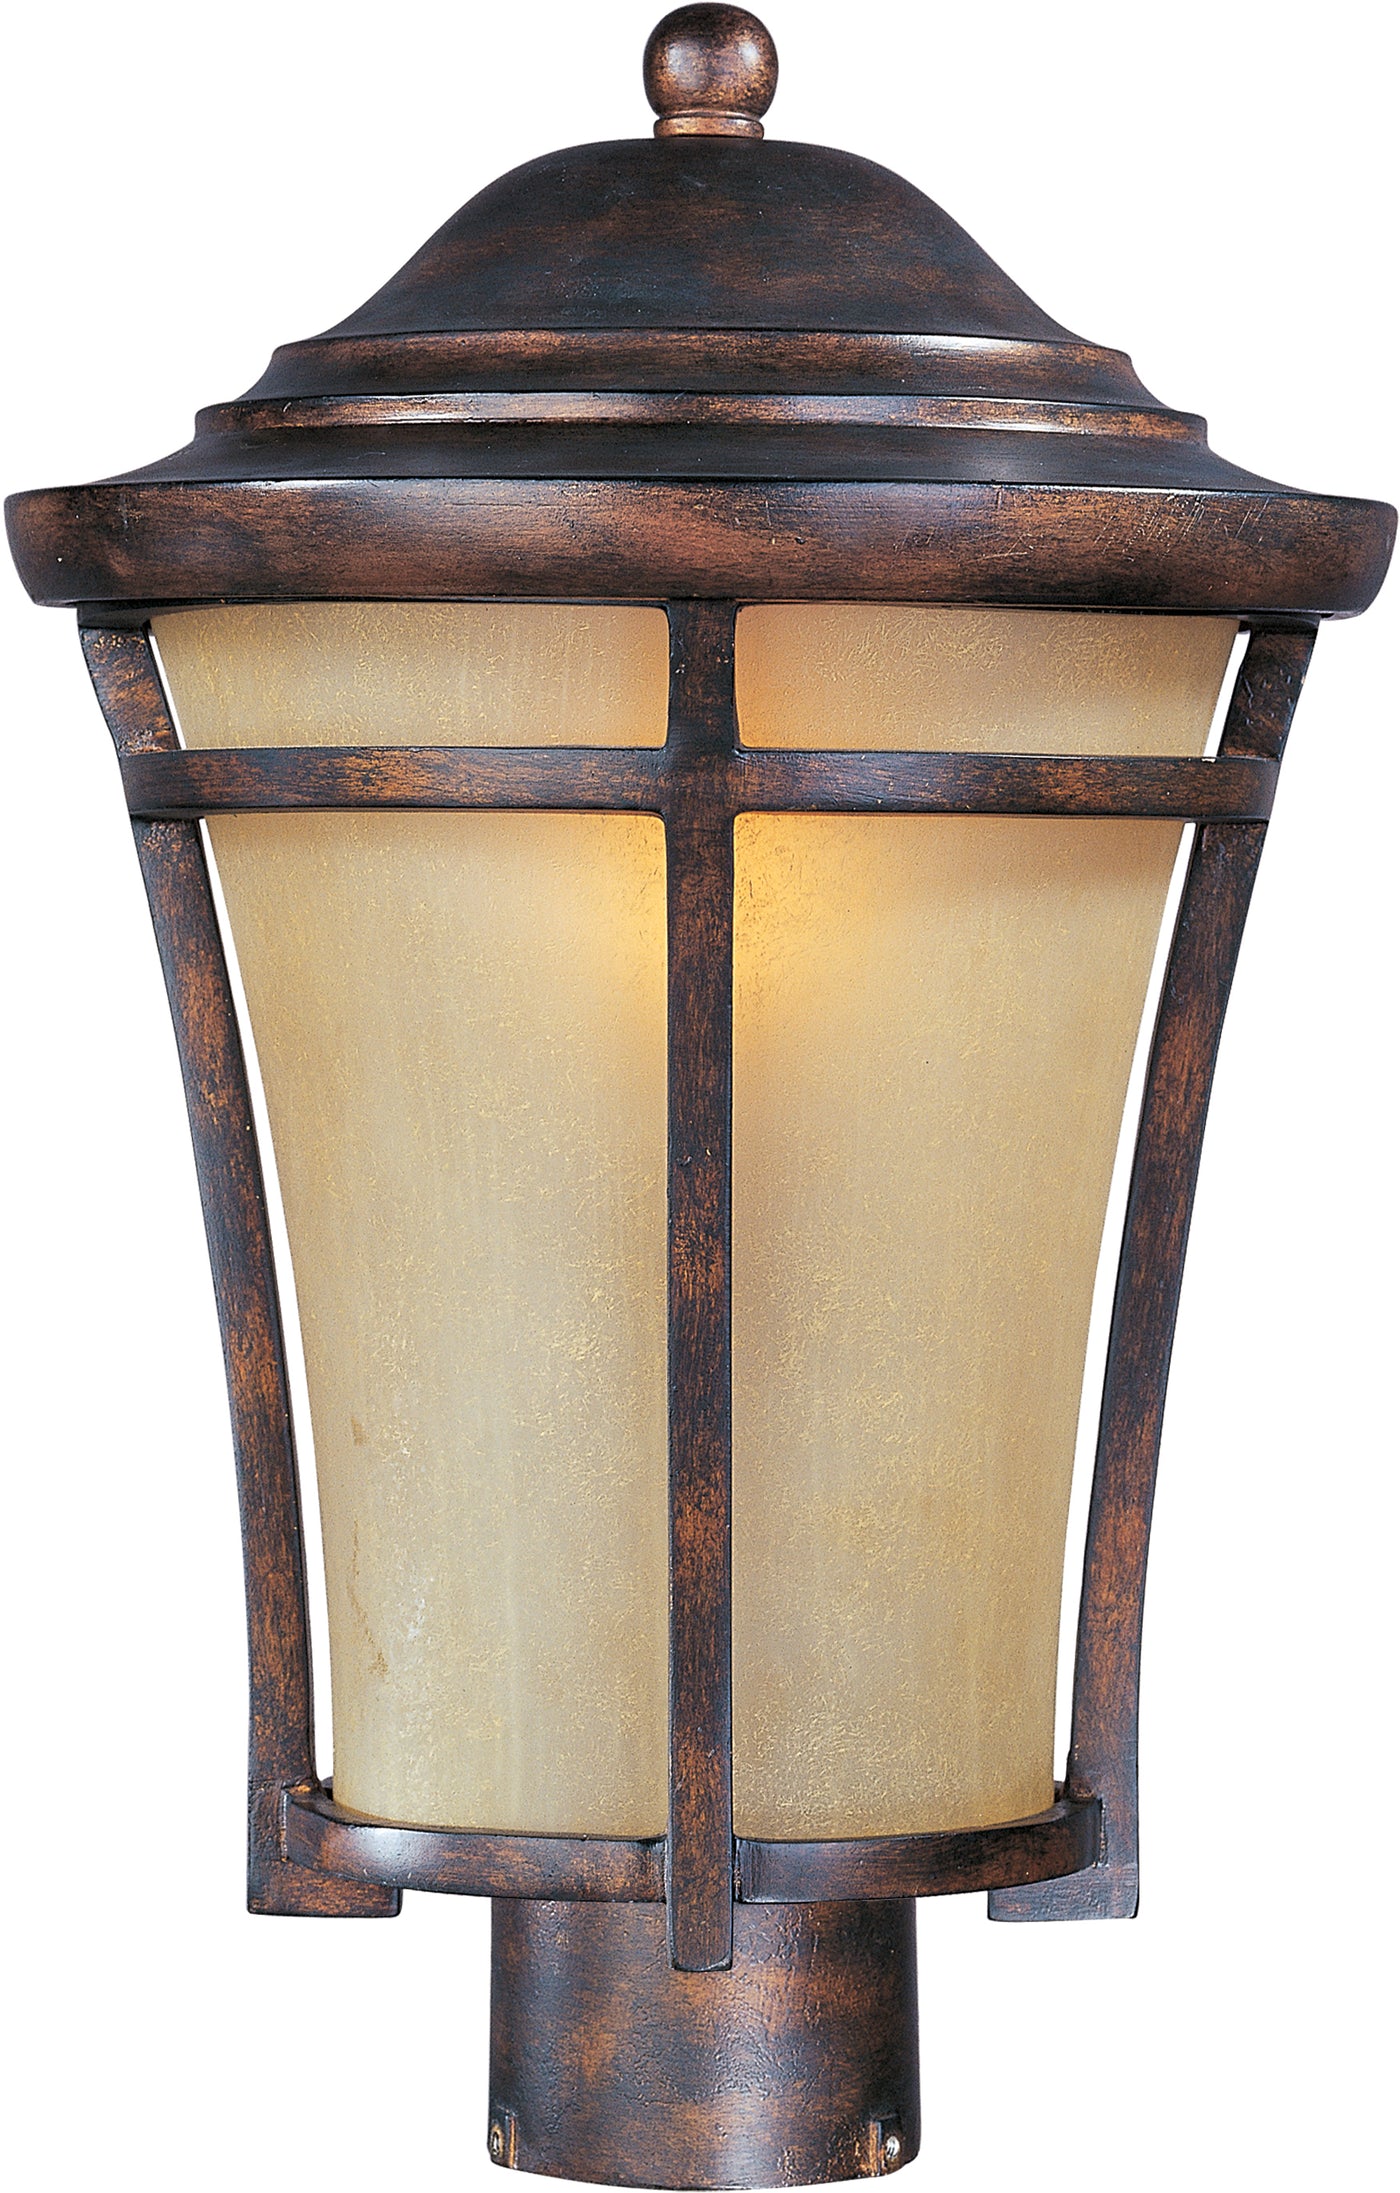 Balboa VX 1-Light Outdoor Pole/Post Lantern